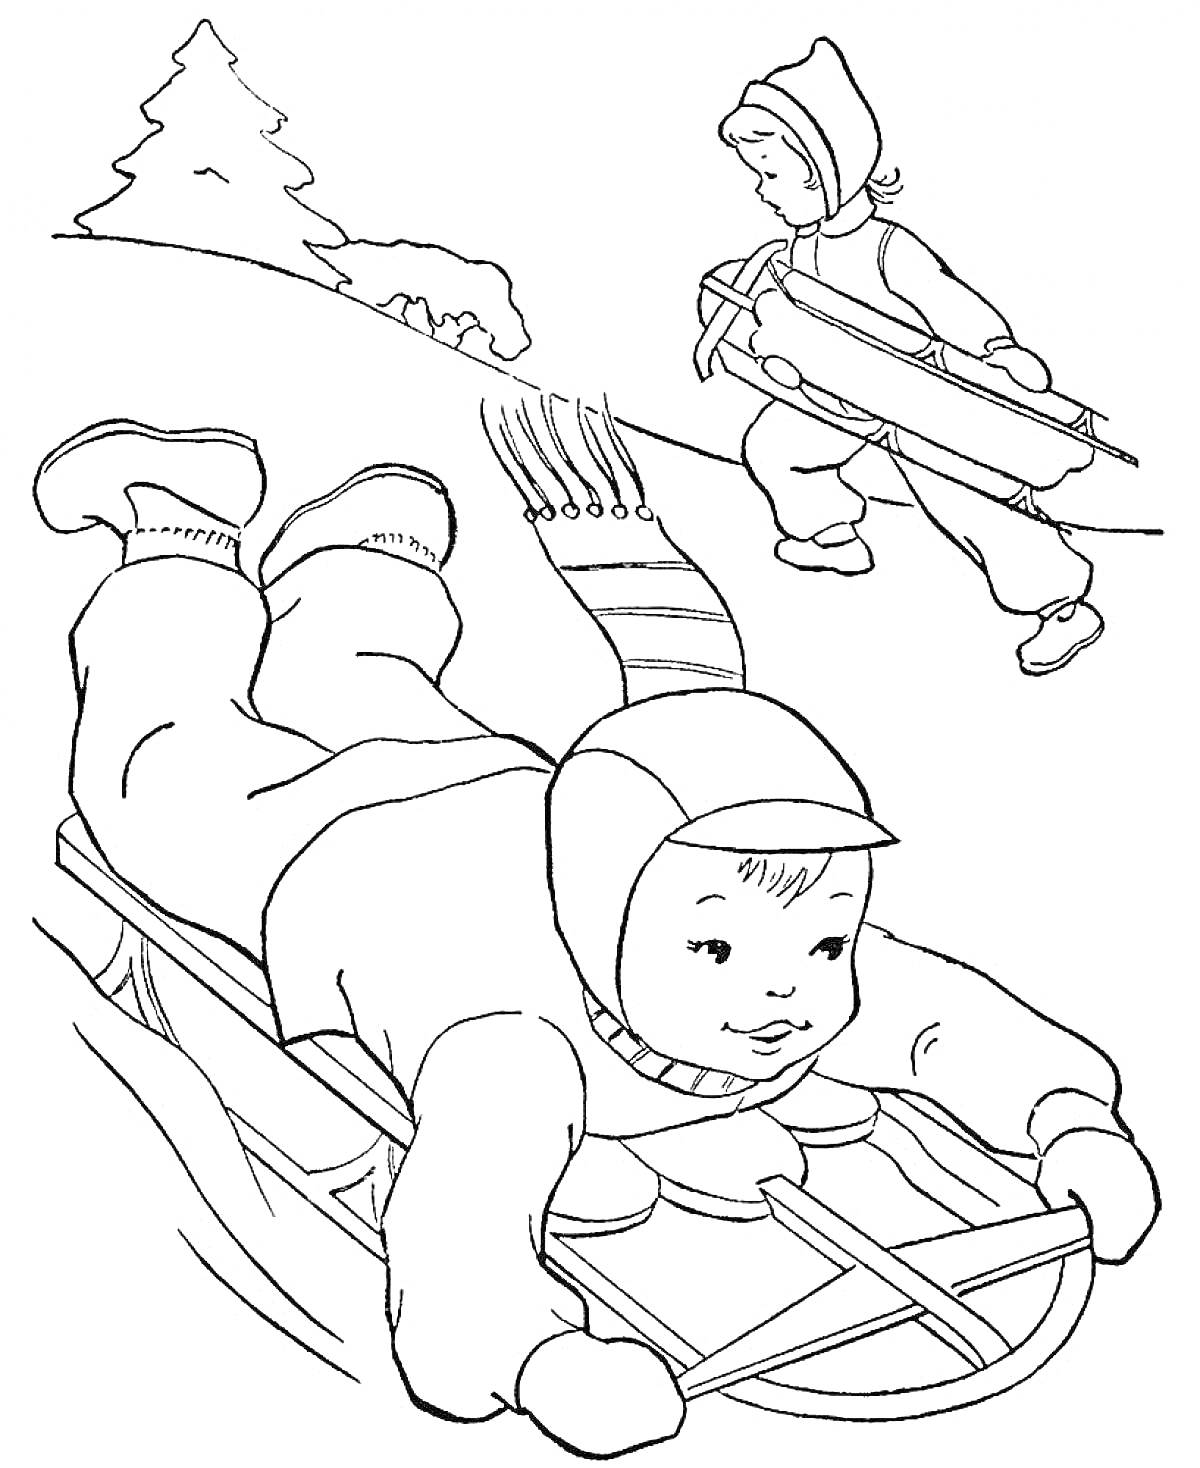 Раскраска Дети на санях на снежном склоне, ребенок едет на санках лежа, второй несет санки, елка на заднем плане